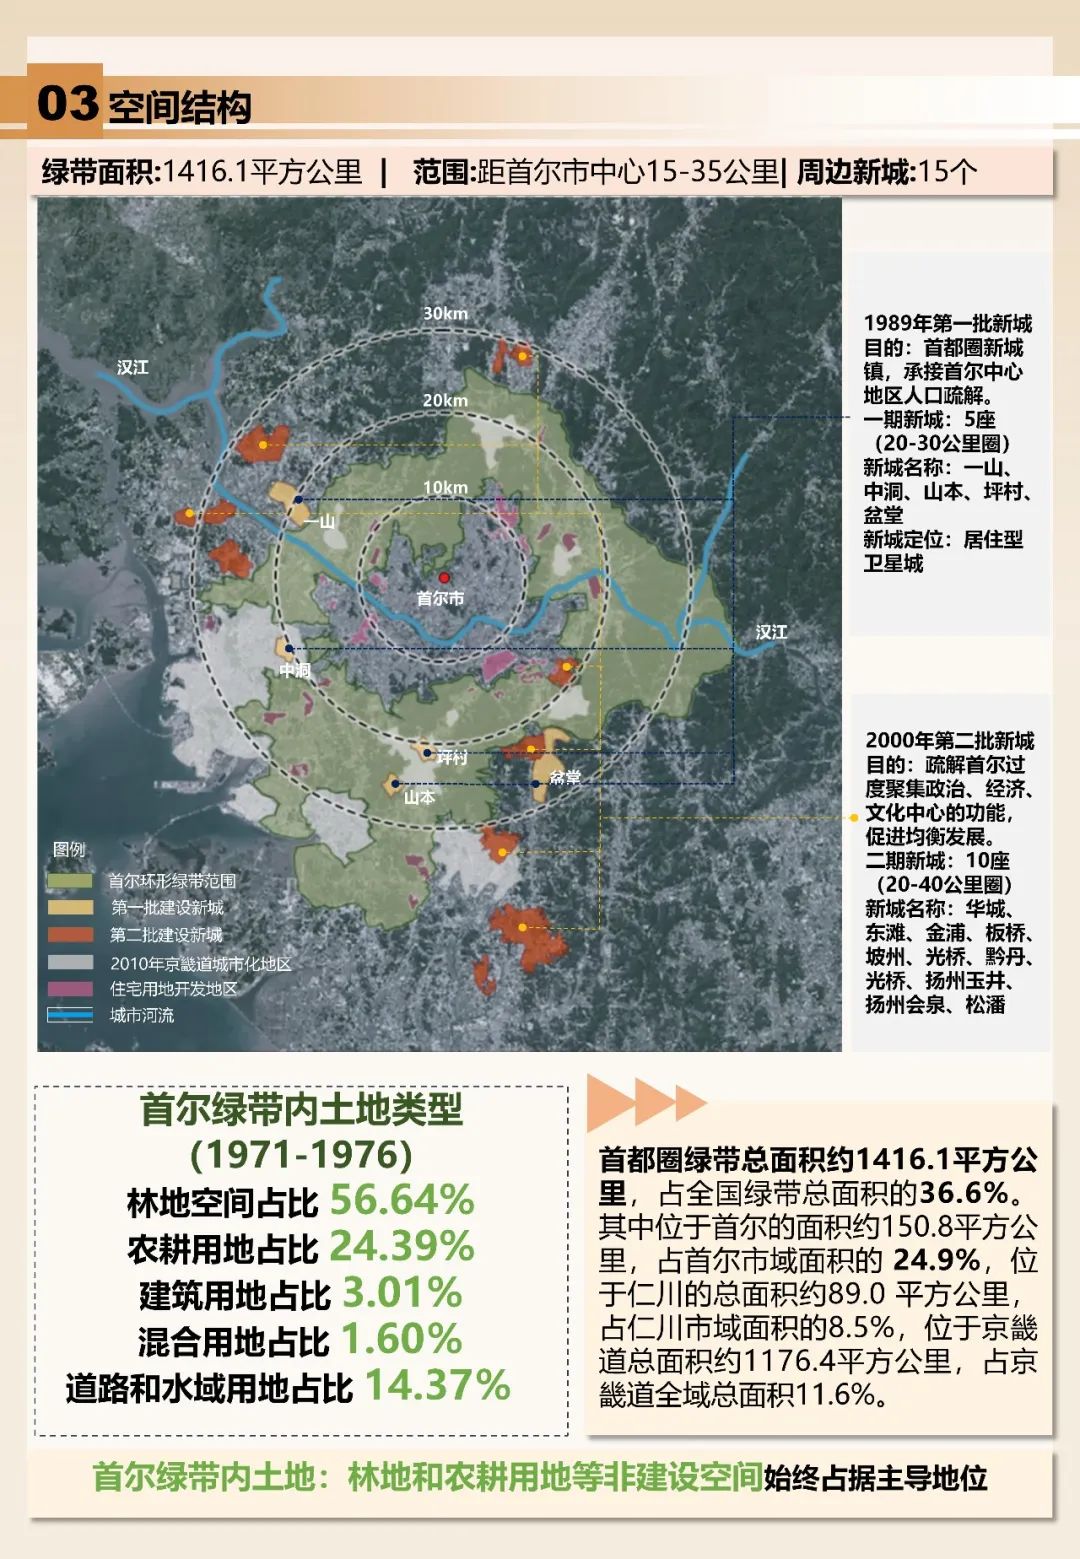 韩国首尔绿带——快速城镇化下的适应性发展路径